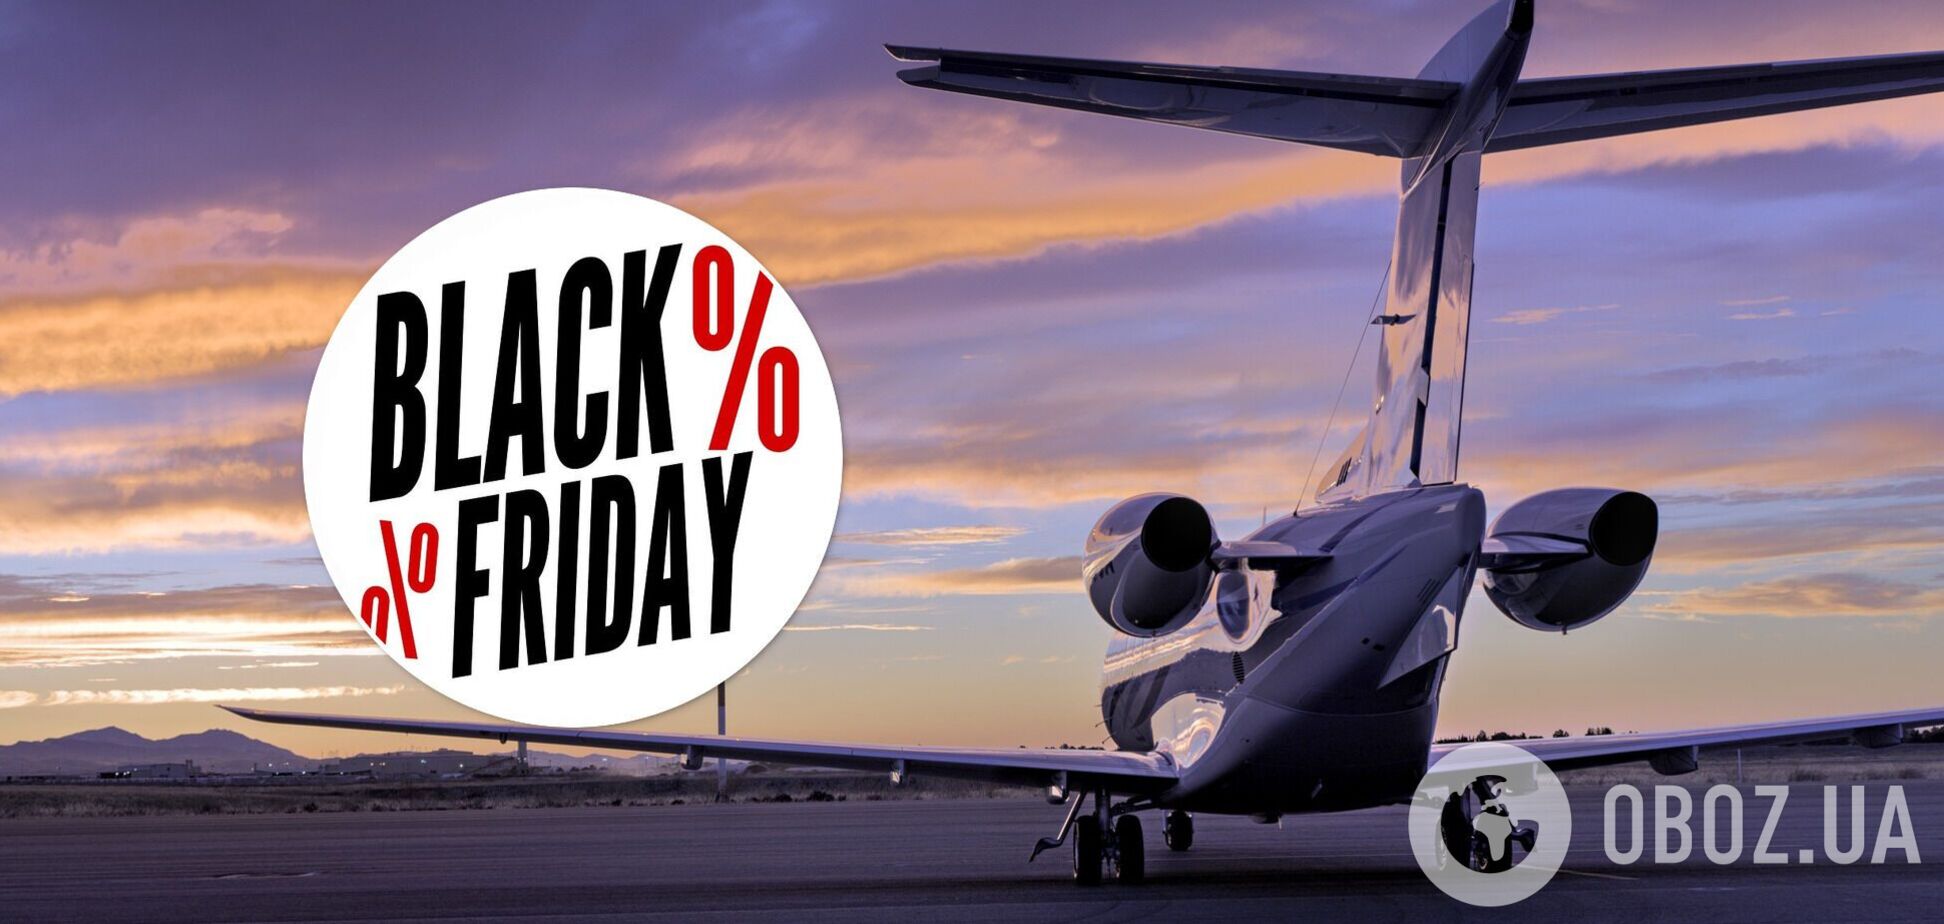 Дешевые авиатуры на 'Черную пятницу': как не попасться на мошенников и не потерять все деньги